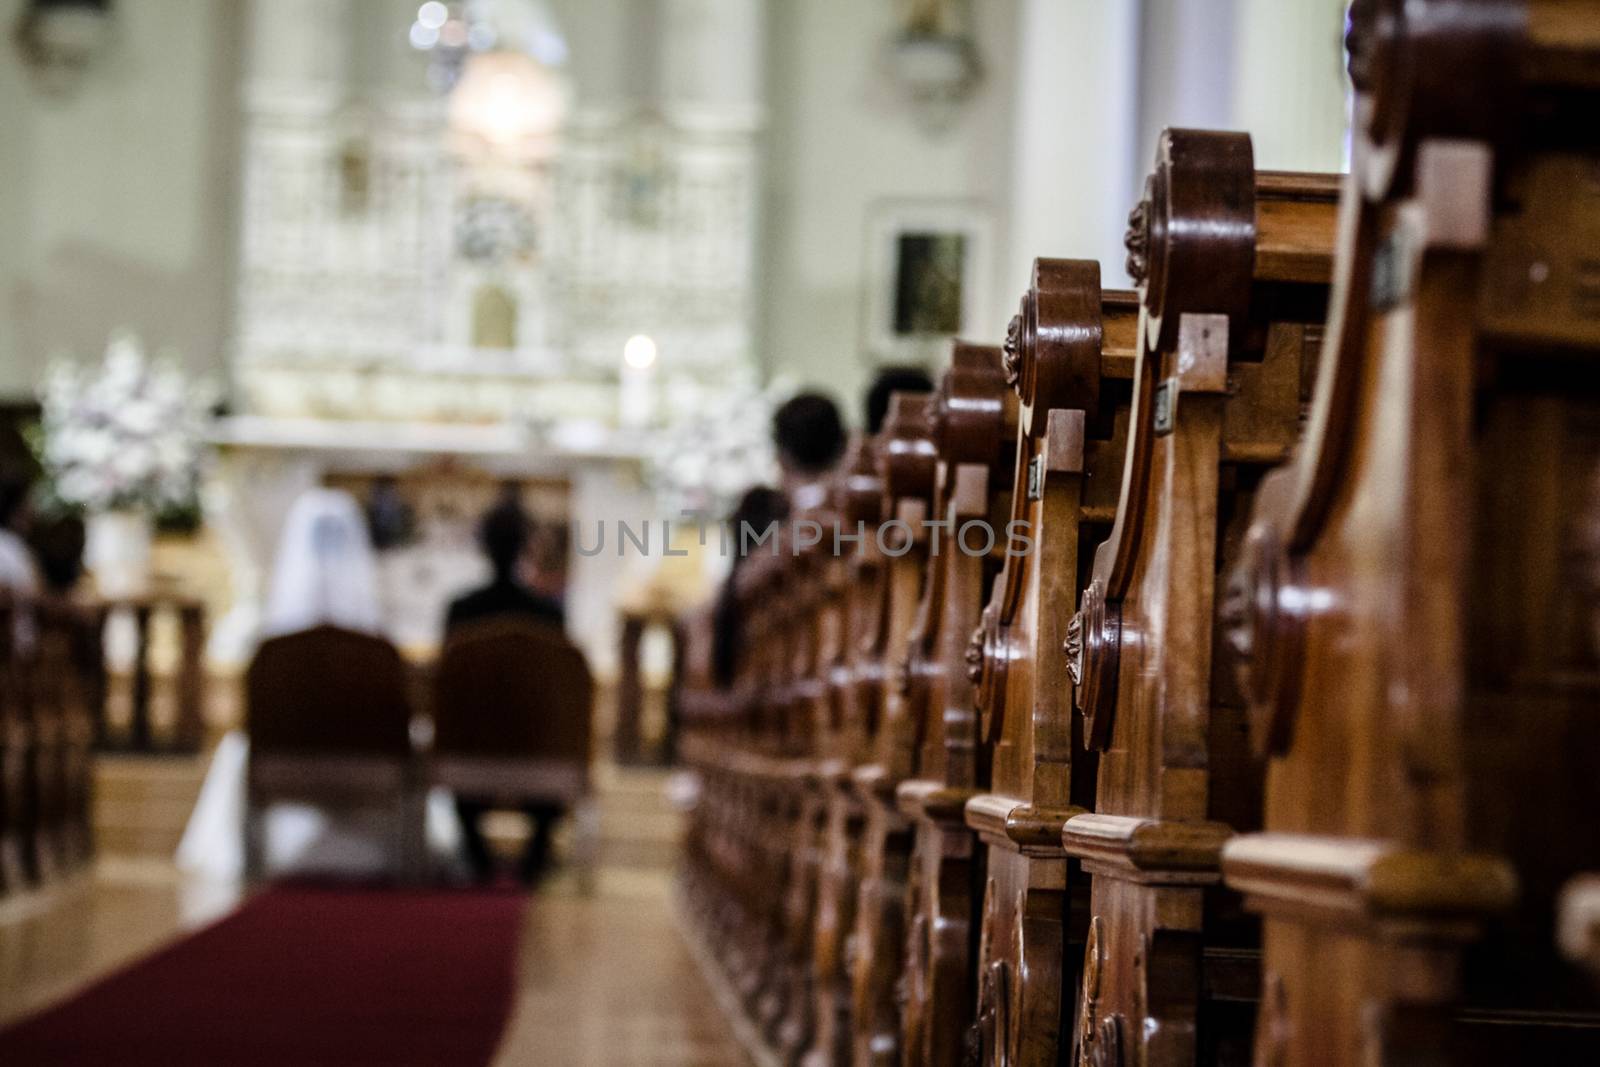 Wedding Ceremony inside a Church by aetb